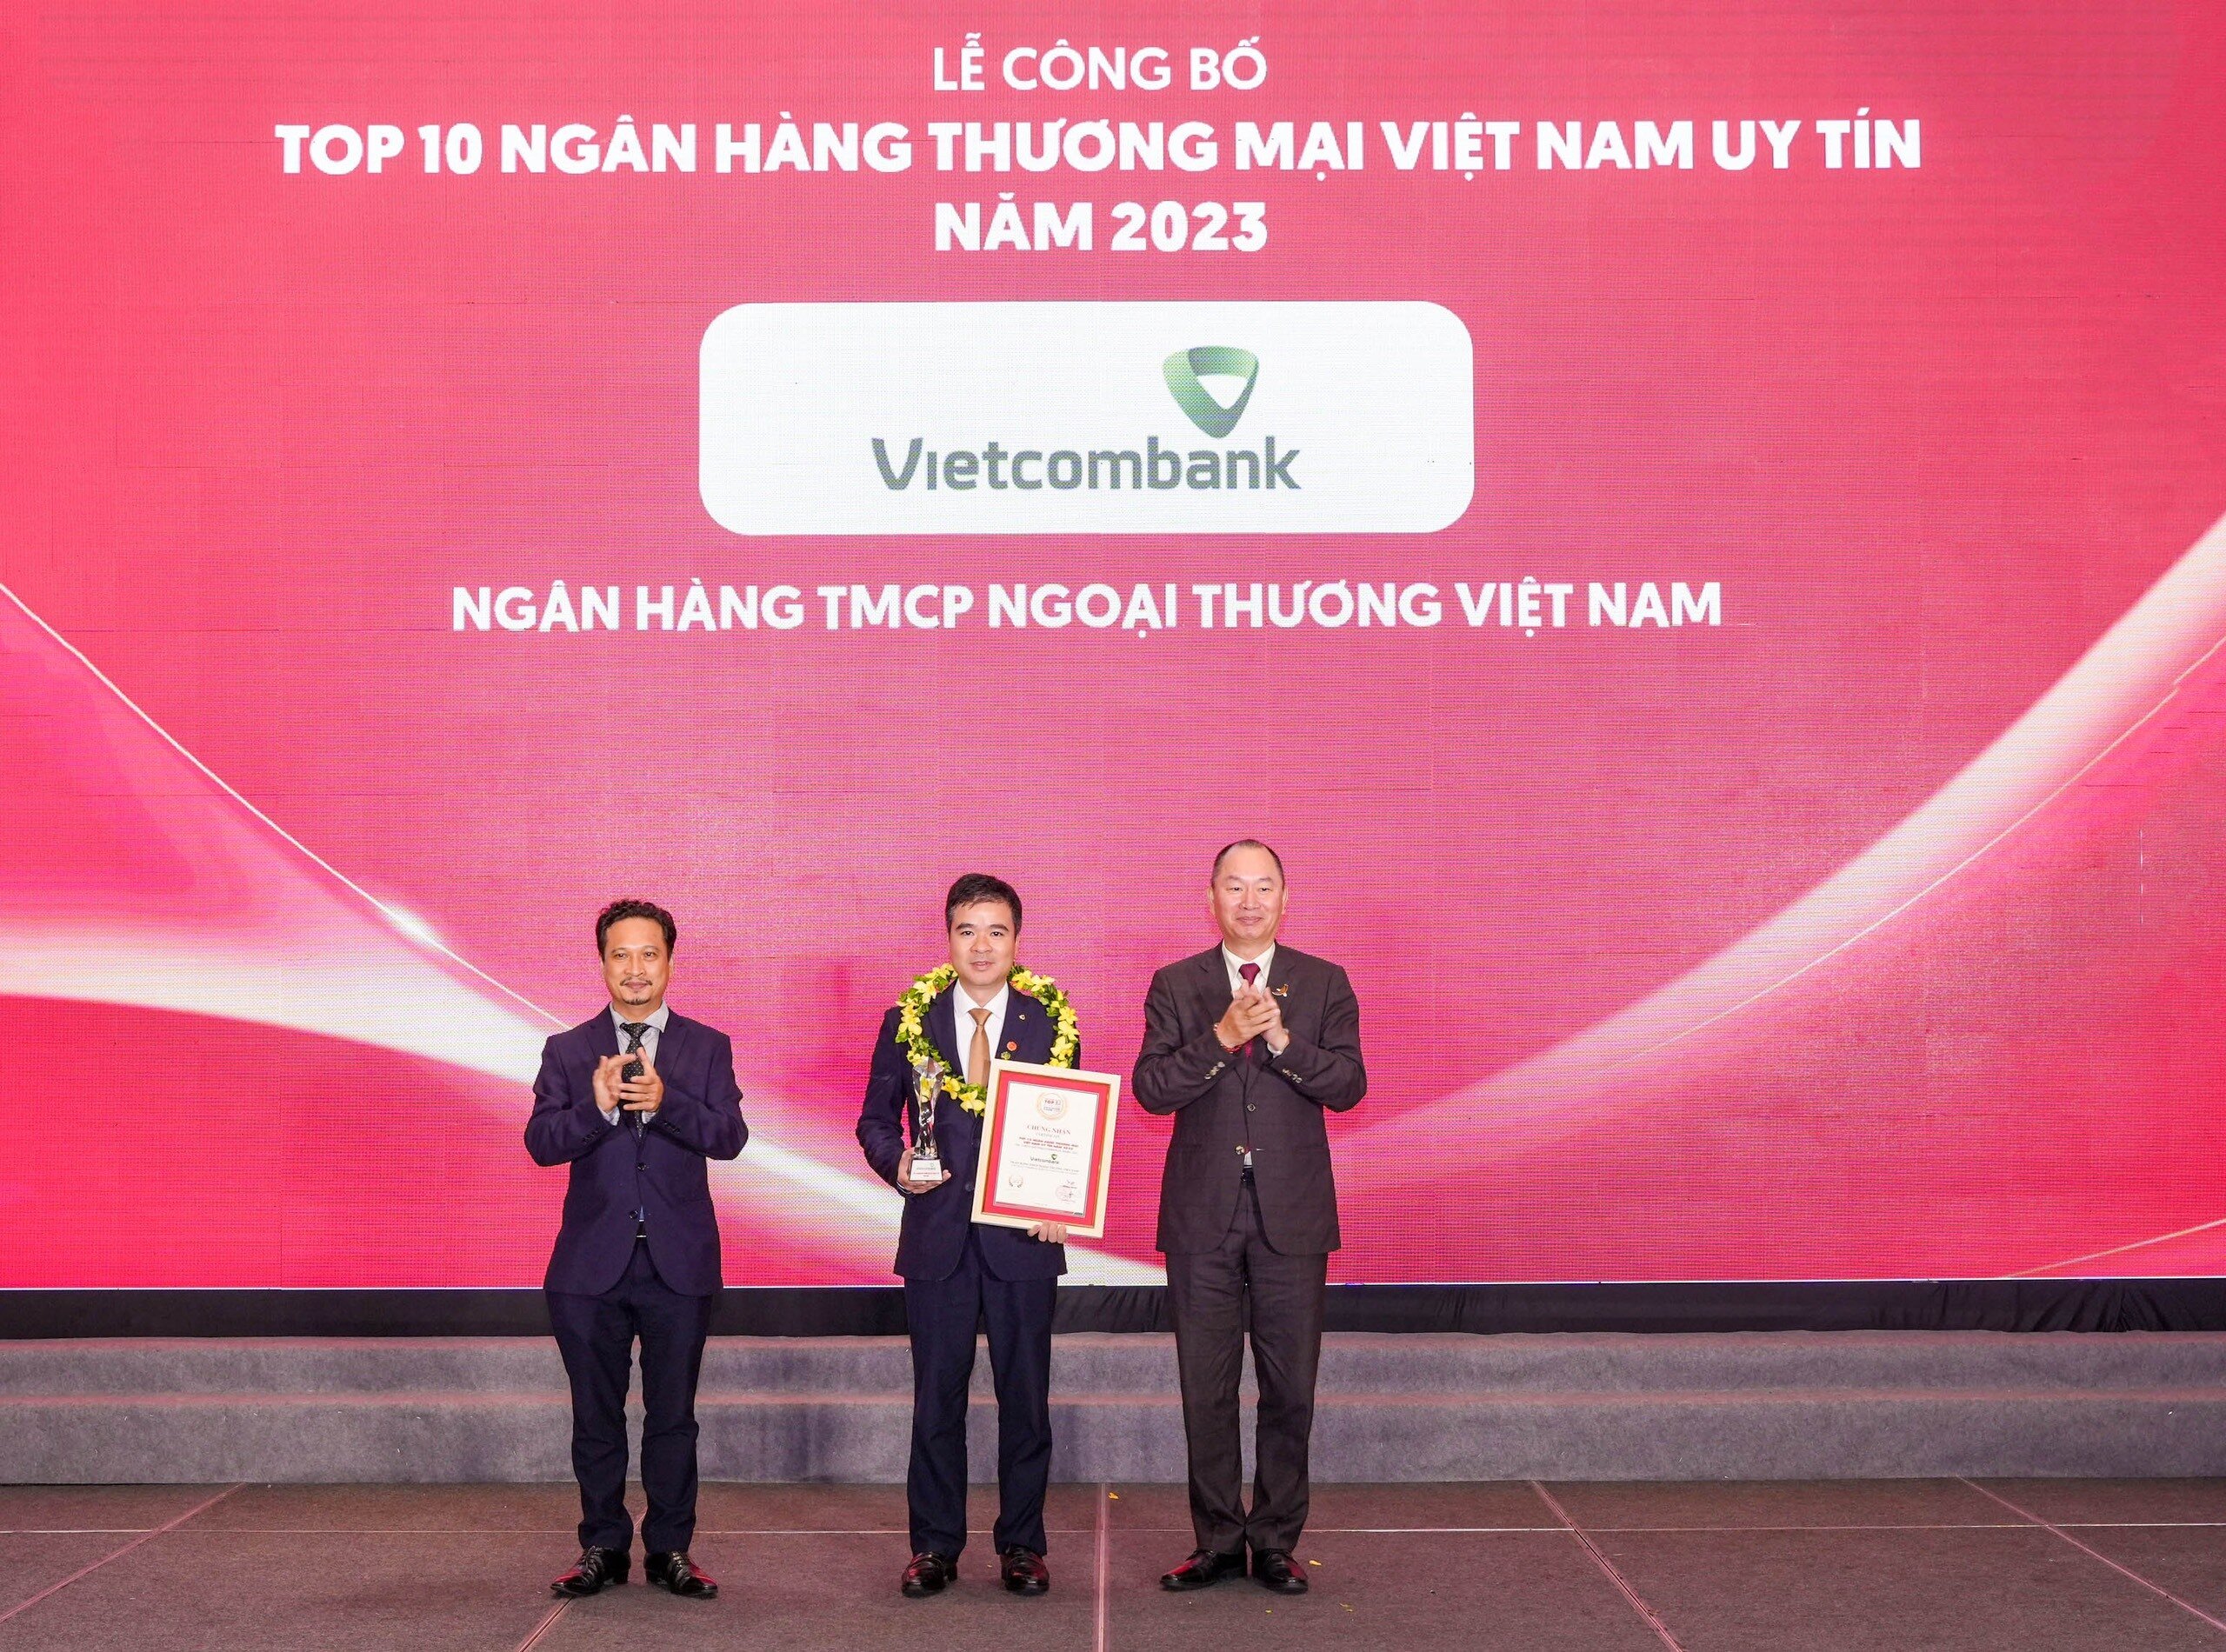 Đại diện Vietcombank (đứng giữa) nhận danh hiệu “Ngân hàng uy tín nhất Việt Nam năm 2023” từ Ban Tổ chức.